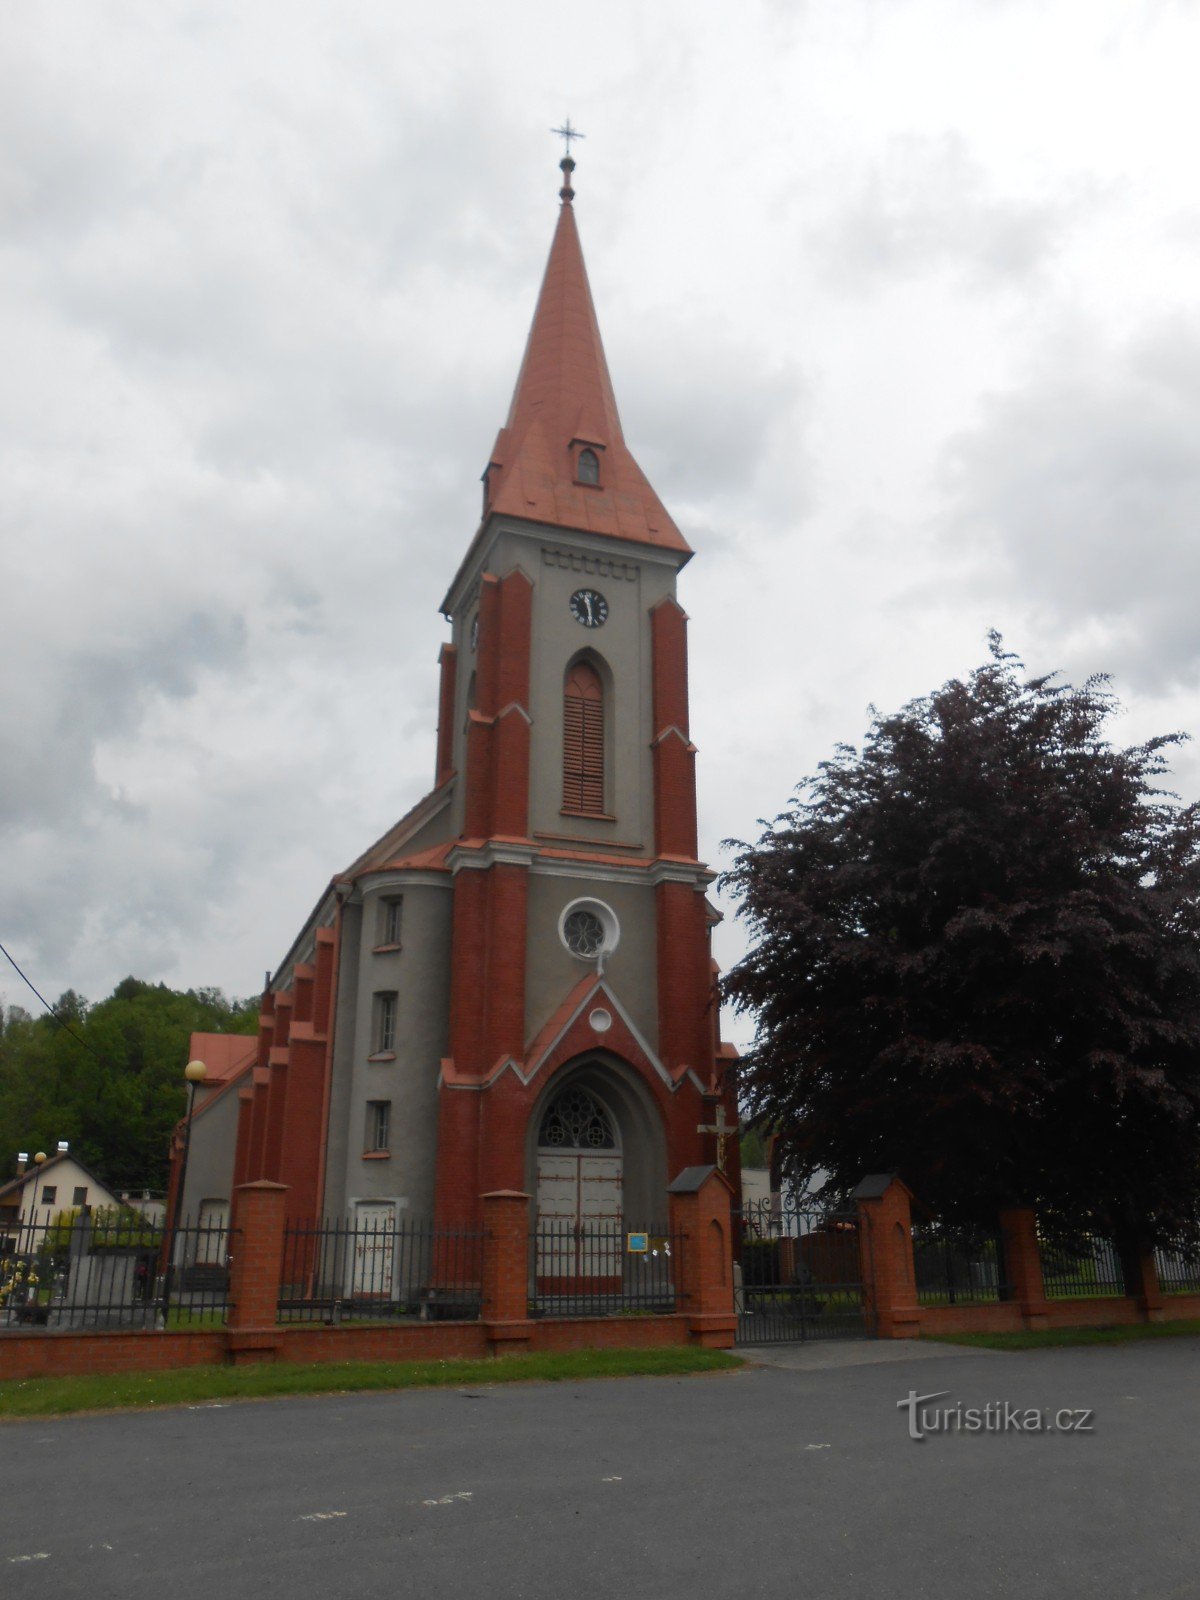 特热诺维采的圣巴塞洛缪教堂